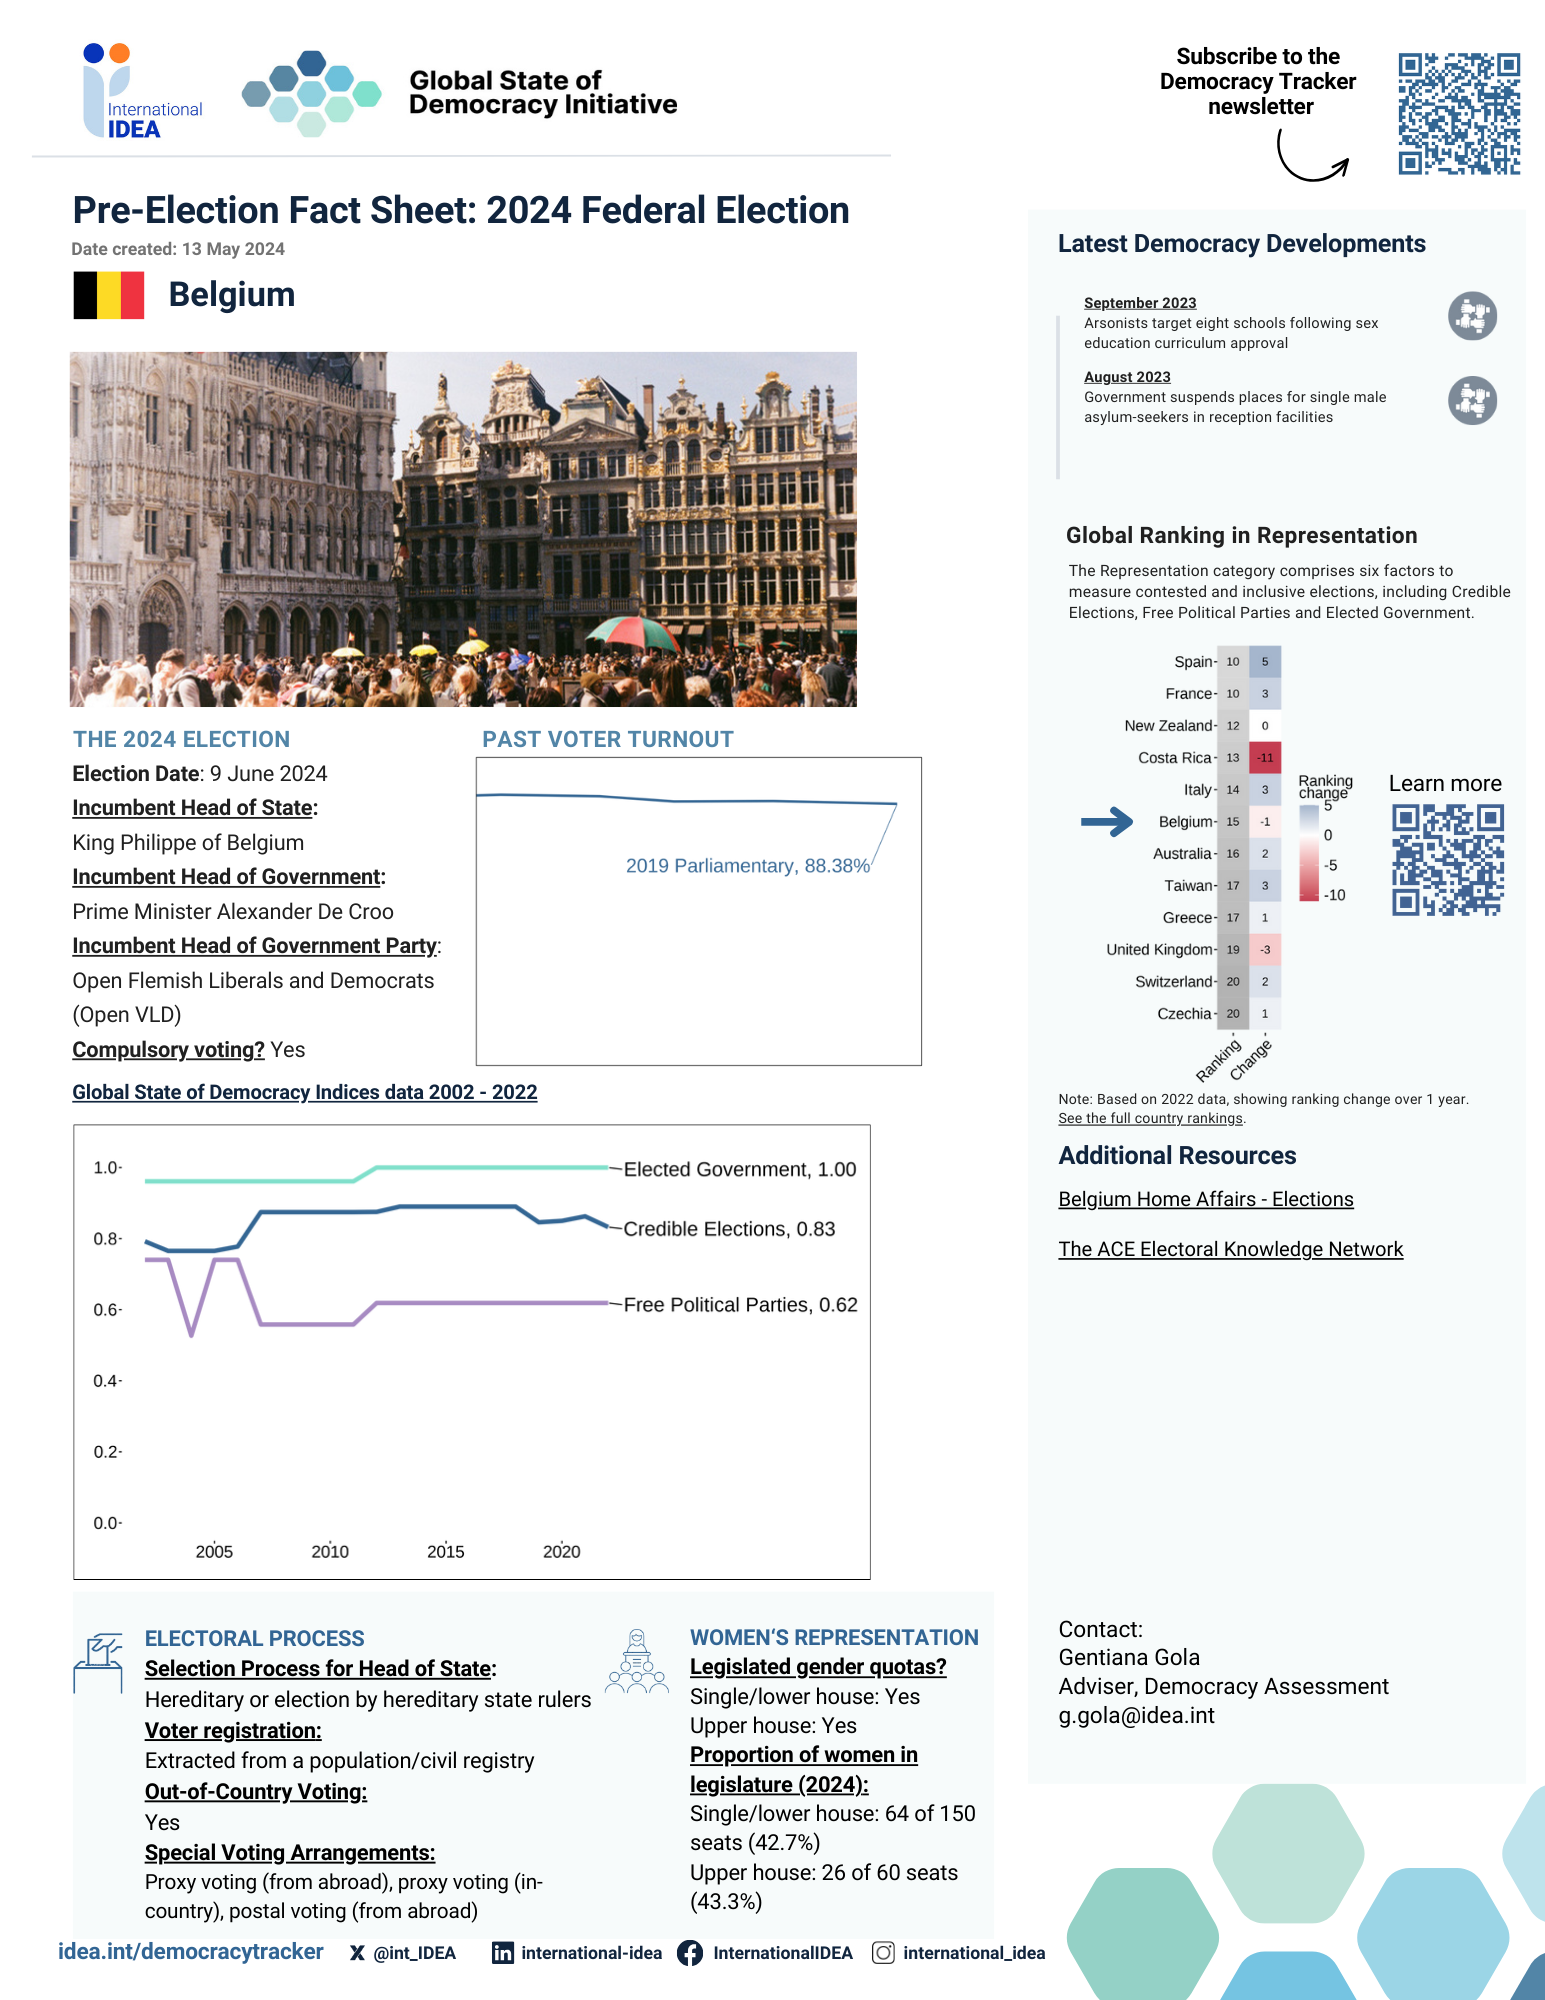 Pre-Election Fact Sheet Belgium